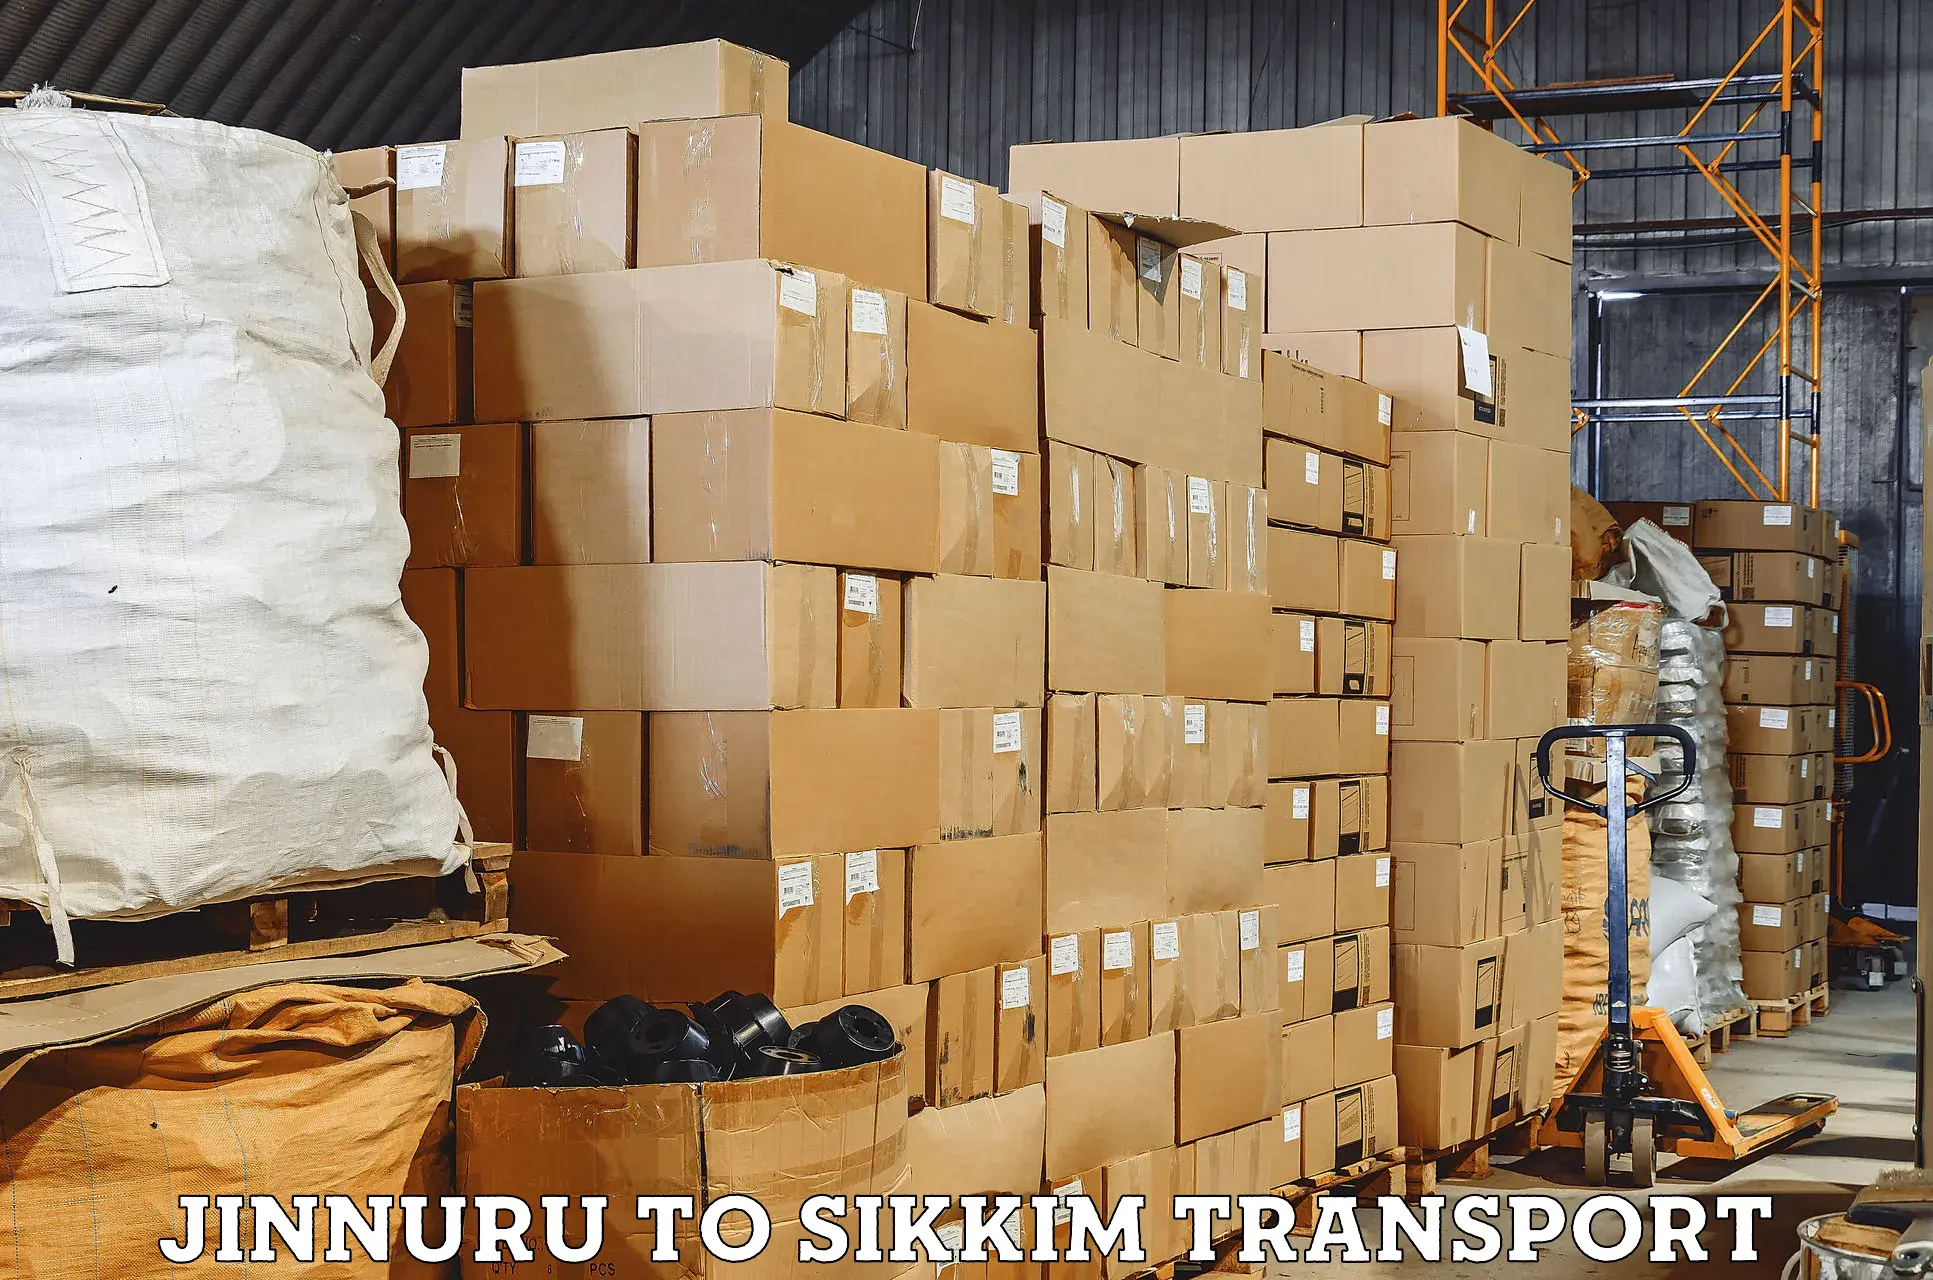 Furniture transport service Jinnuru to South Sikkim